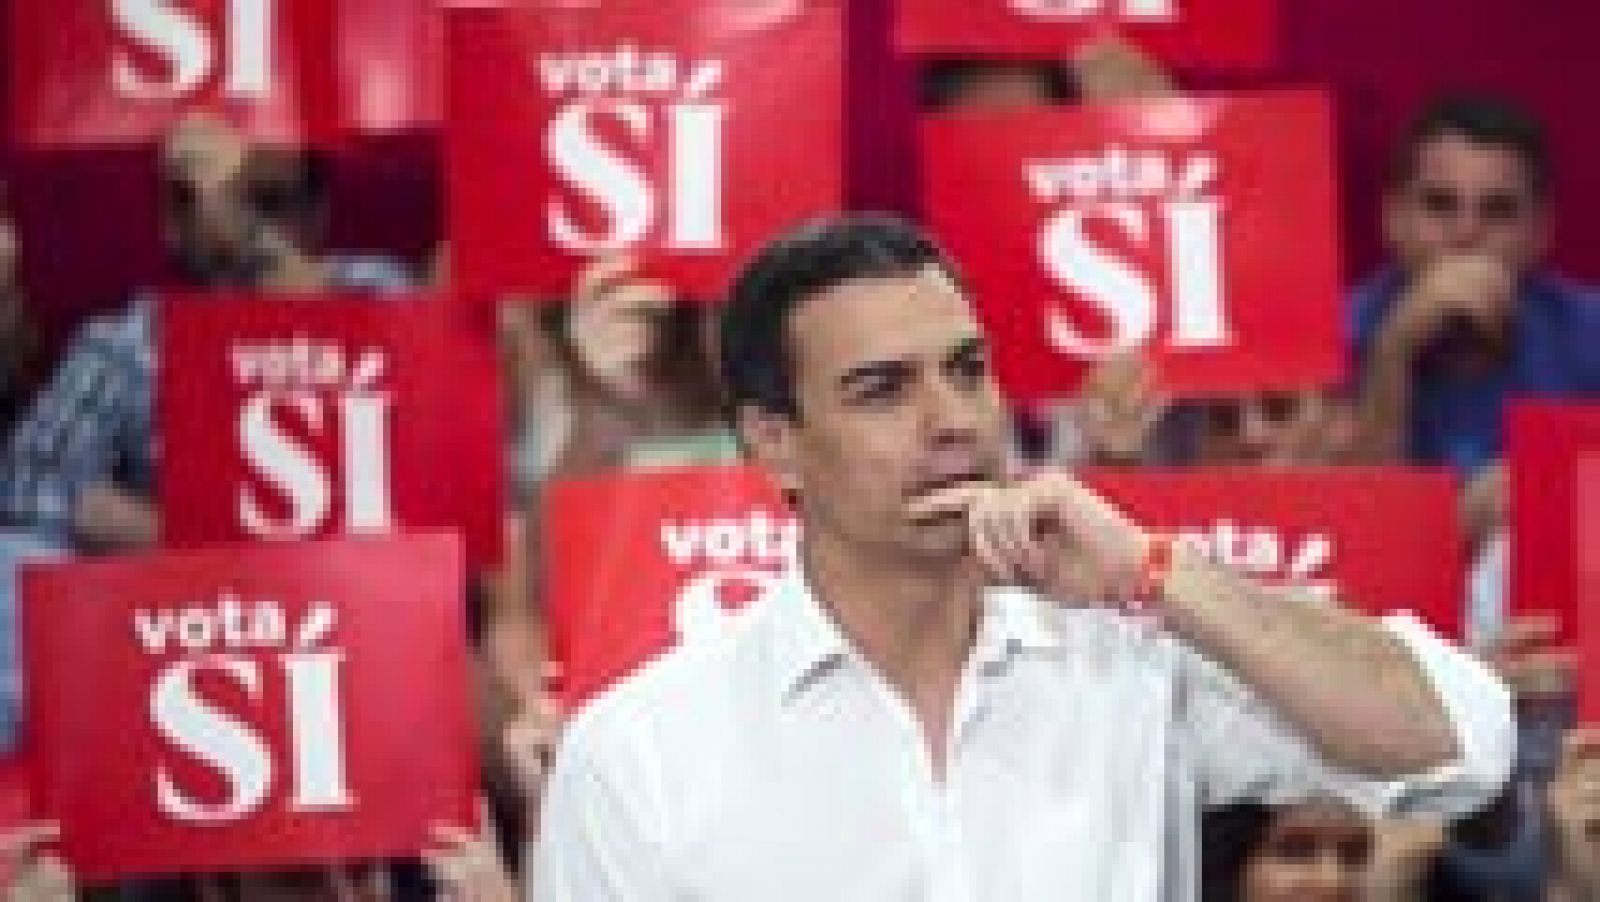 Pedro Sánchez carga contra Iglesias en un mitin en Málaga: "El socialismo se lleva en el corazón, no en un catálogo"